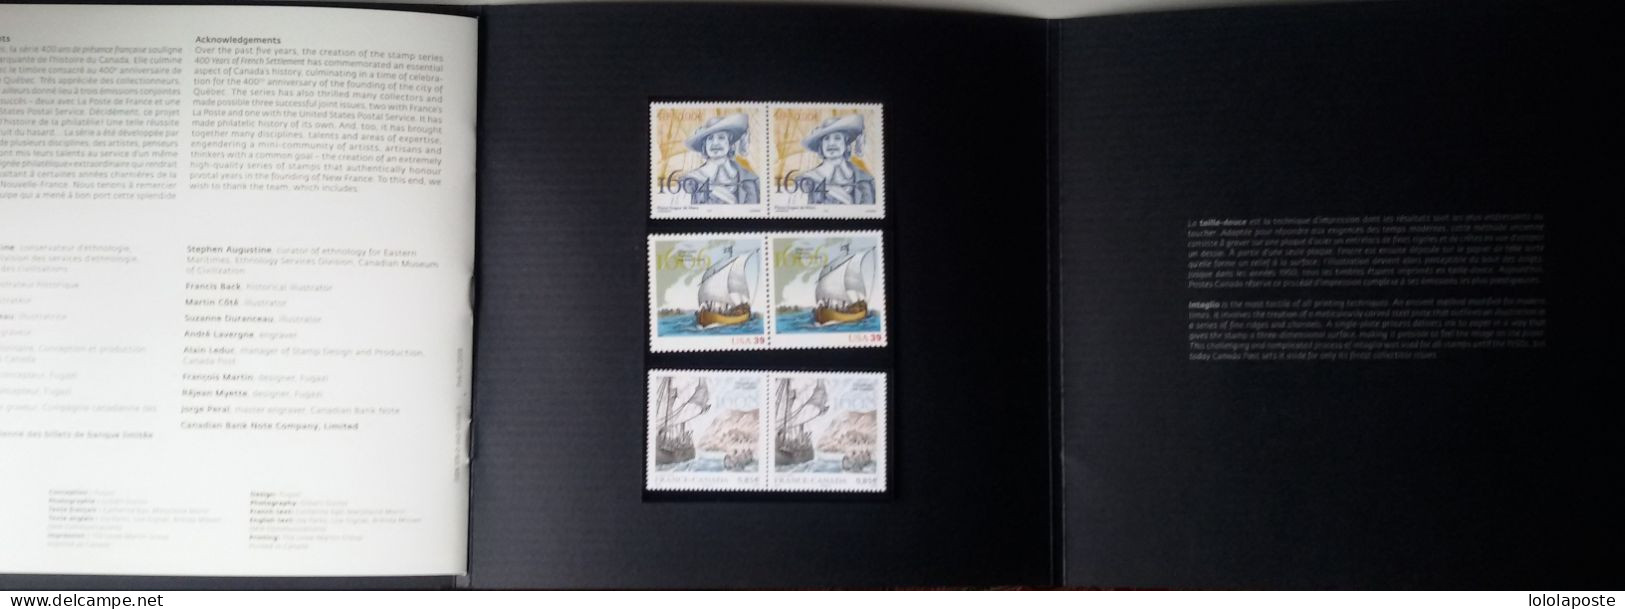 CANADA - SUPERBE livre de 31 pages de l'émission conjointe avec la poste de France  et U.S. avec timbres et épreuve